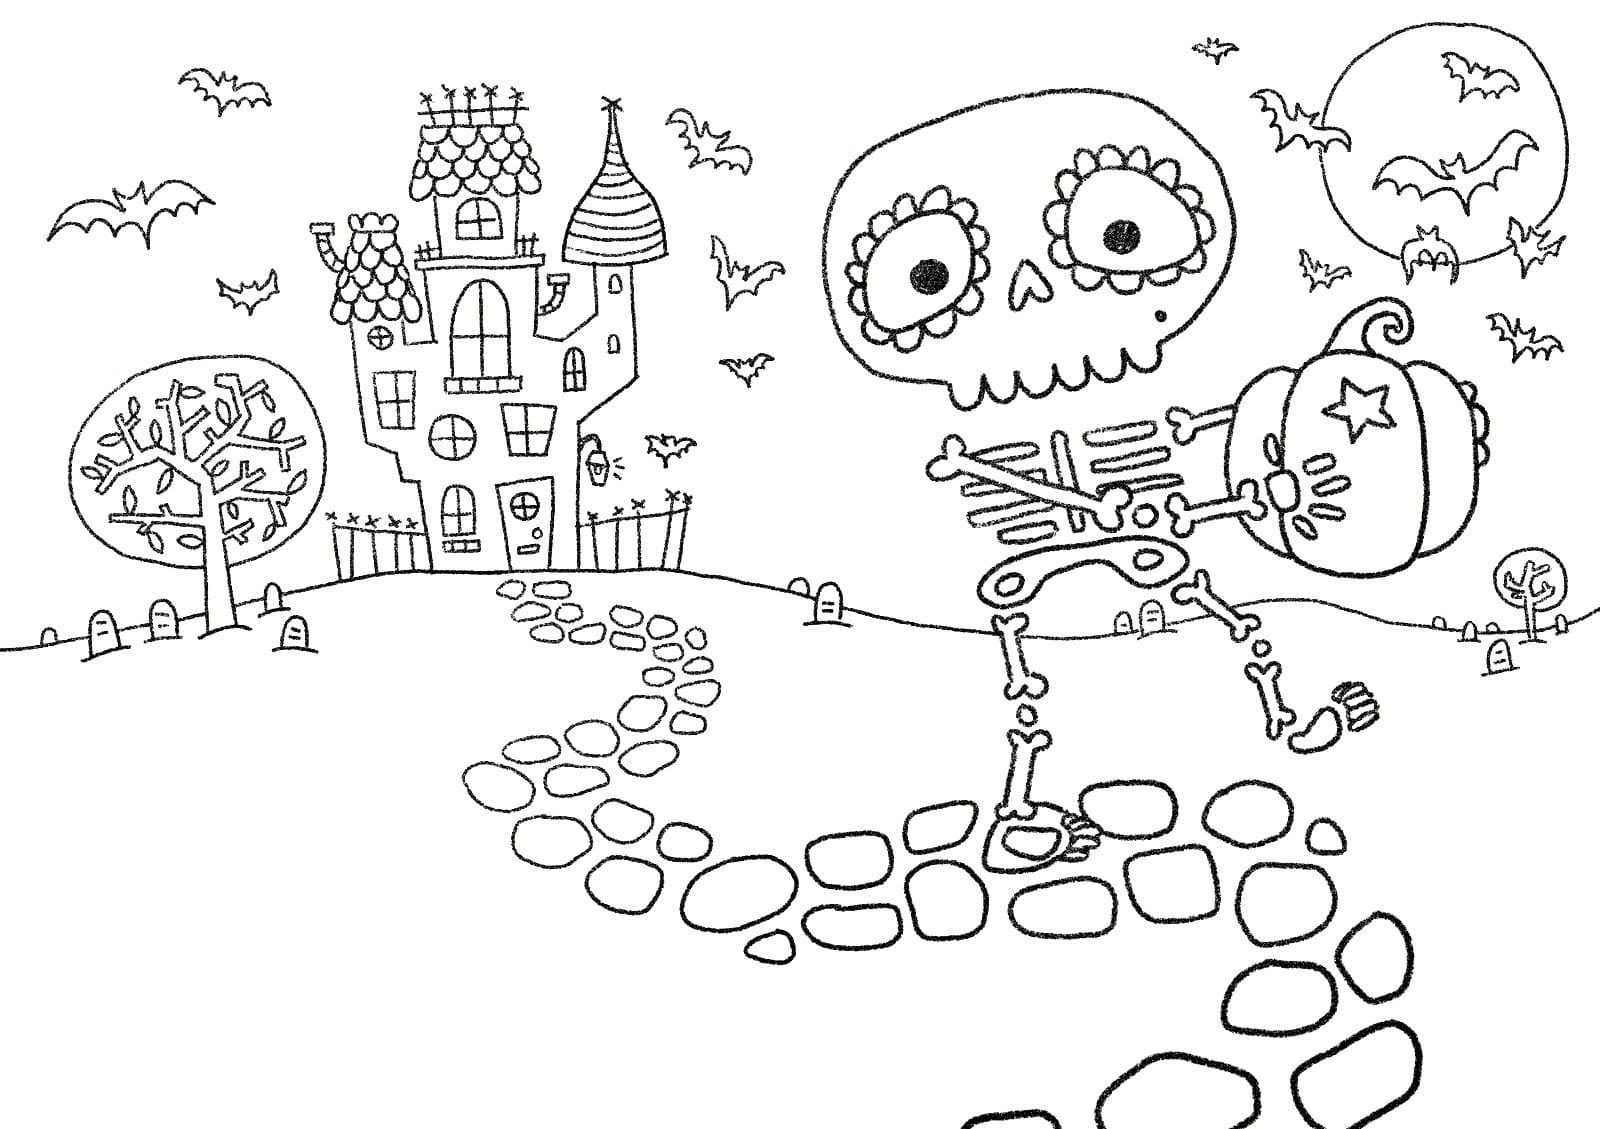 Squelette et Maison Hantée coloring page